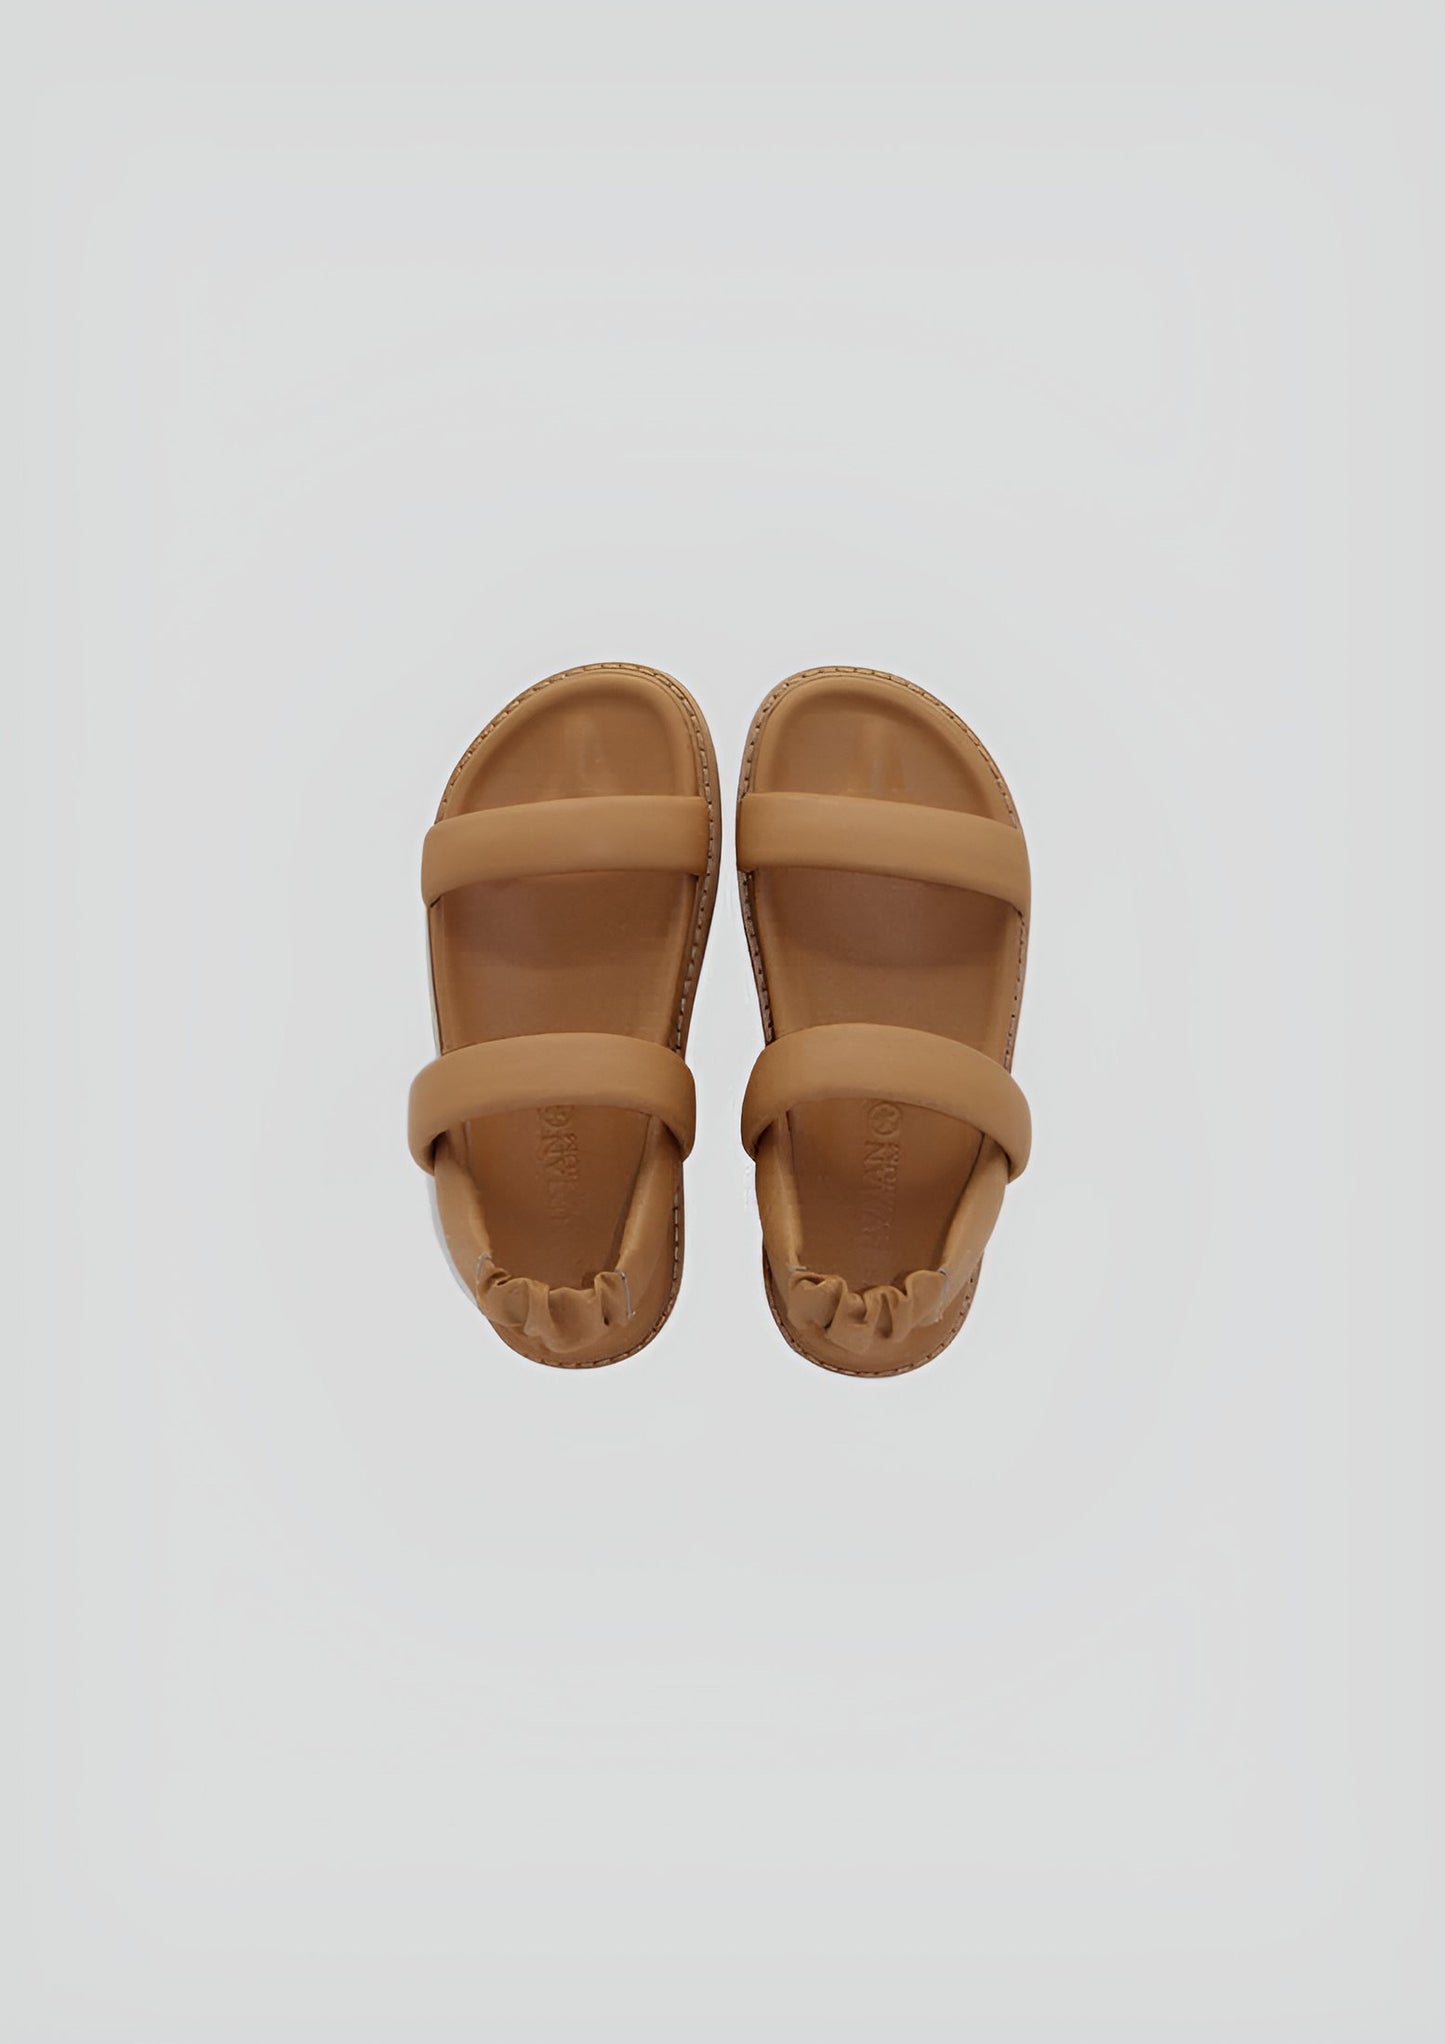 Algort Sandals - Tan